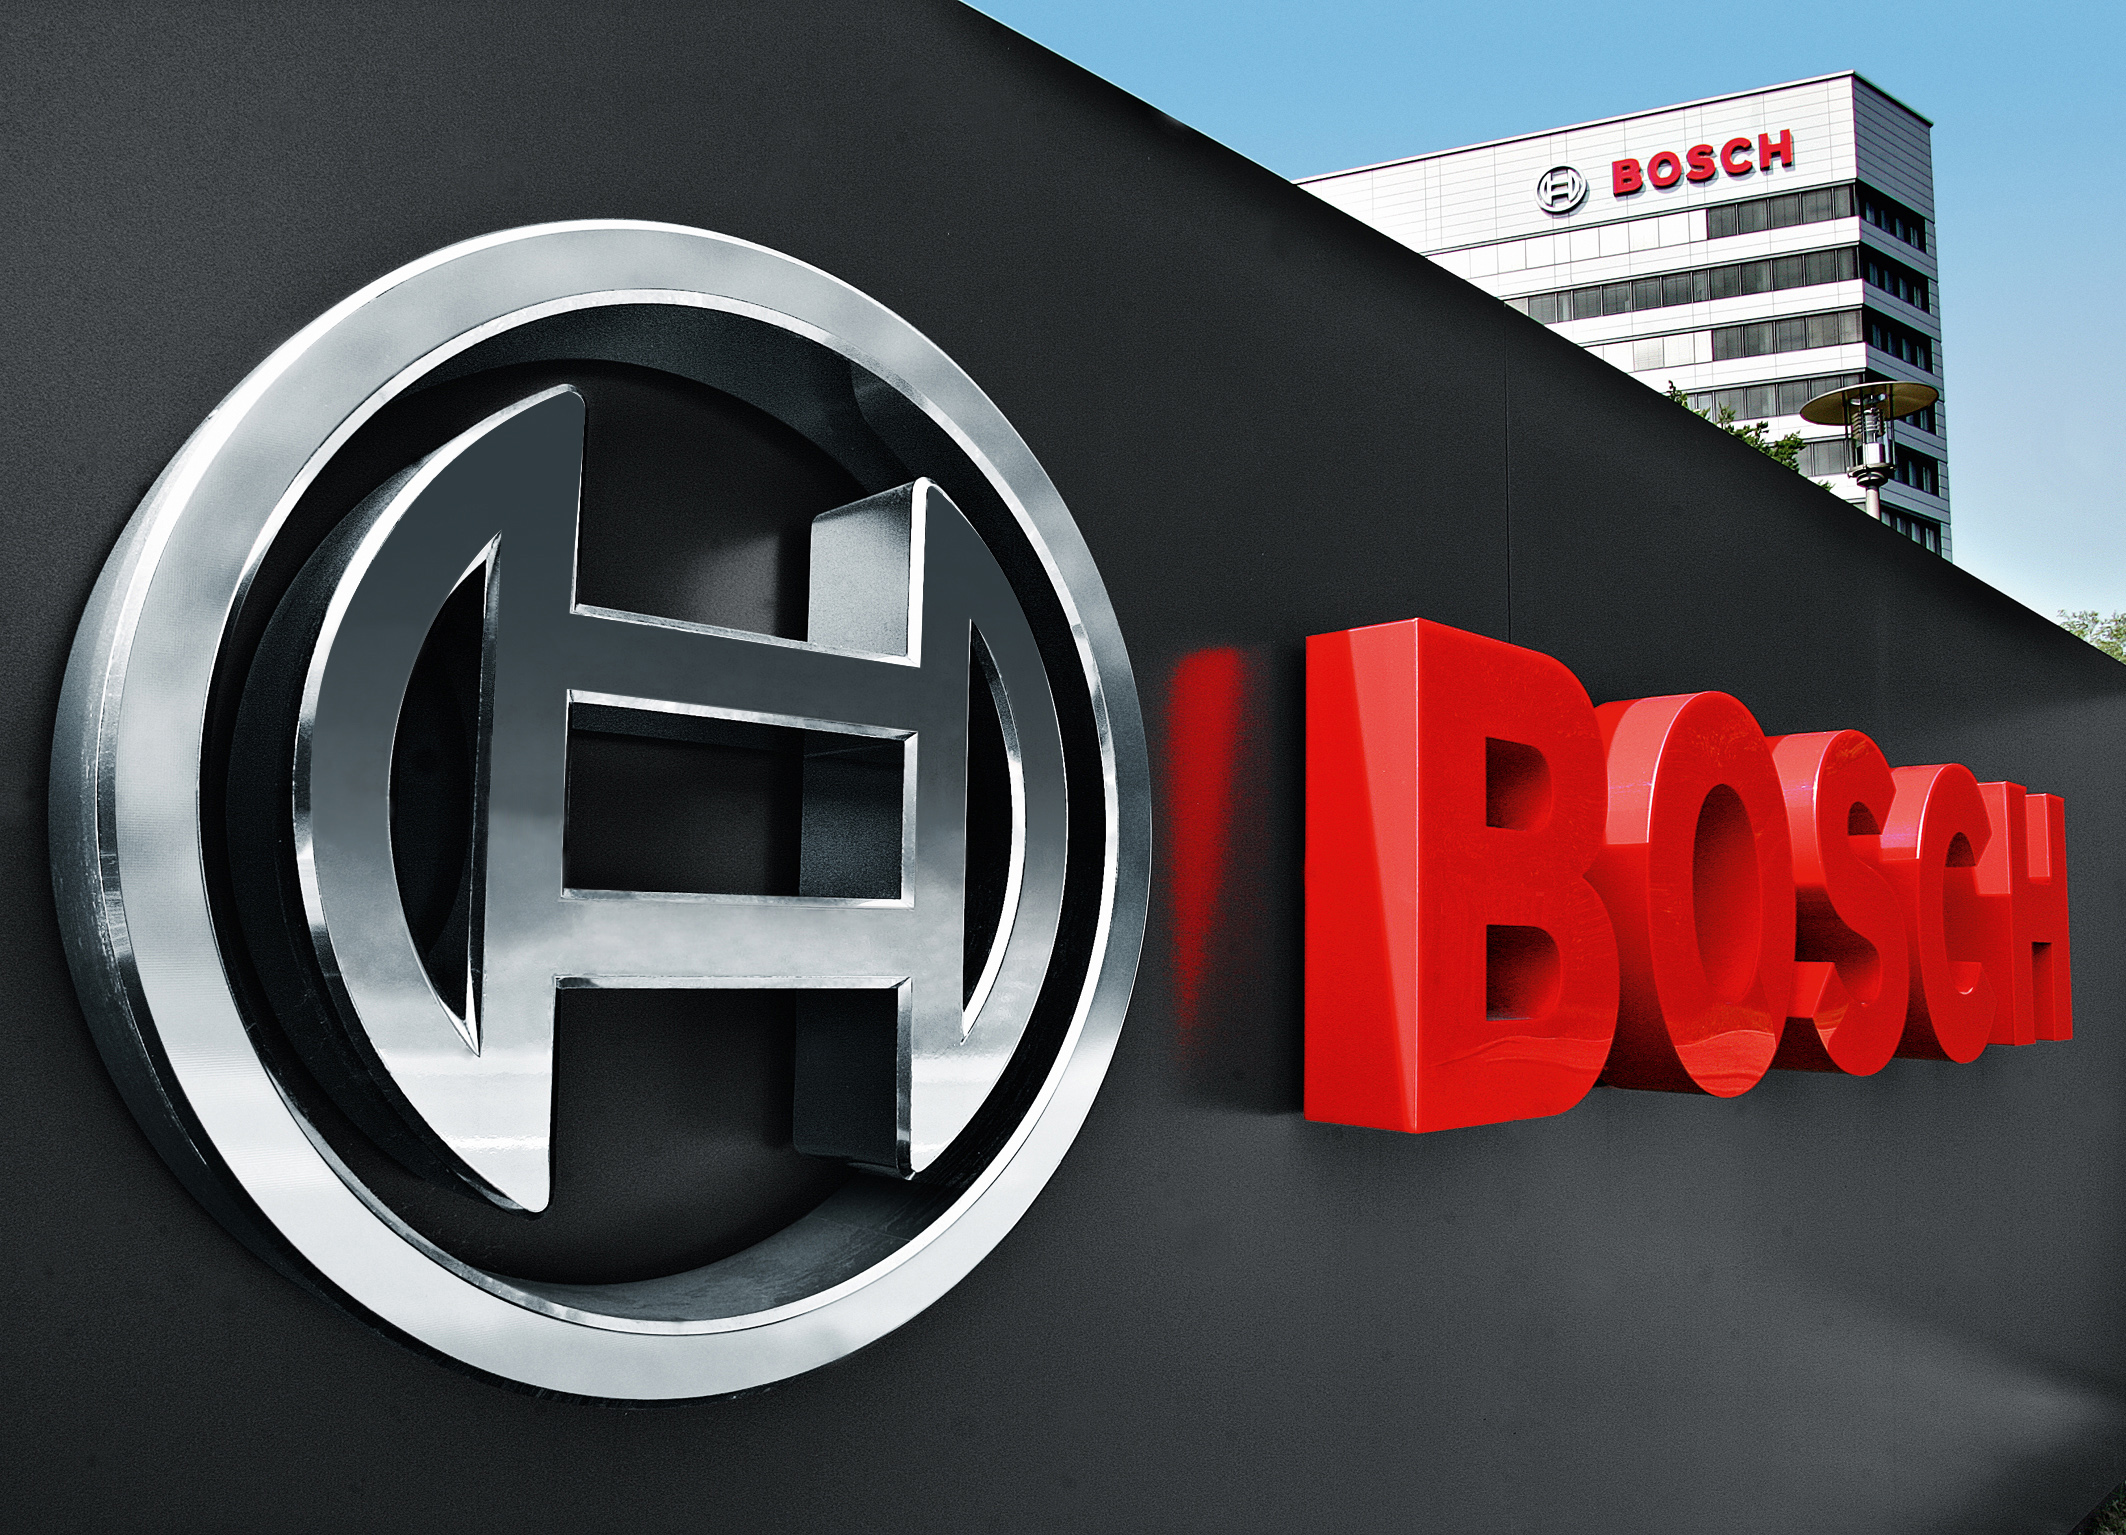 Bosch Sisteme de Securitate şi Sony stabilesc un parteneriat în domeniul securităţii video